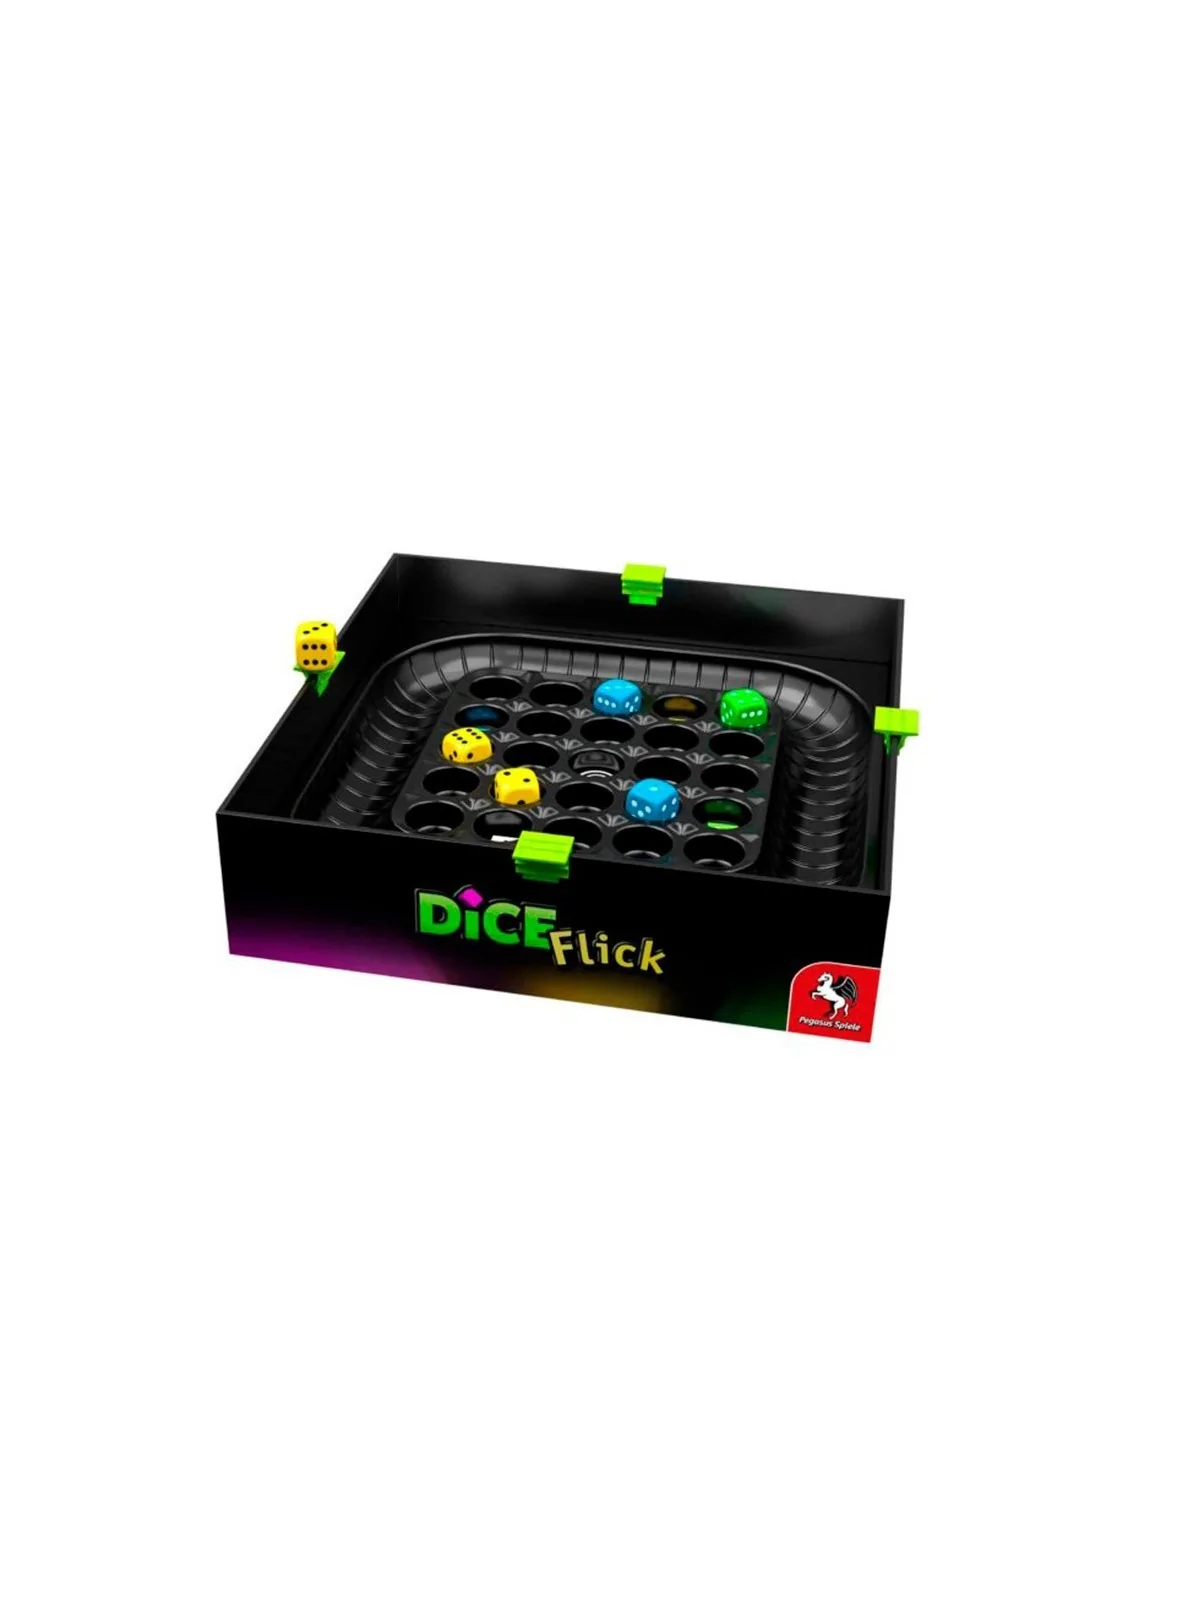 Comprar Dice Flick barato al mejor precio 22,50 € de TCG Factory